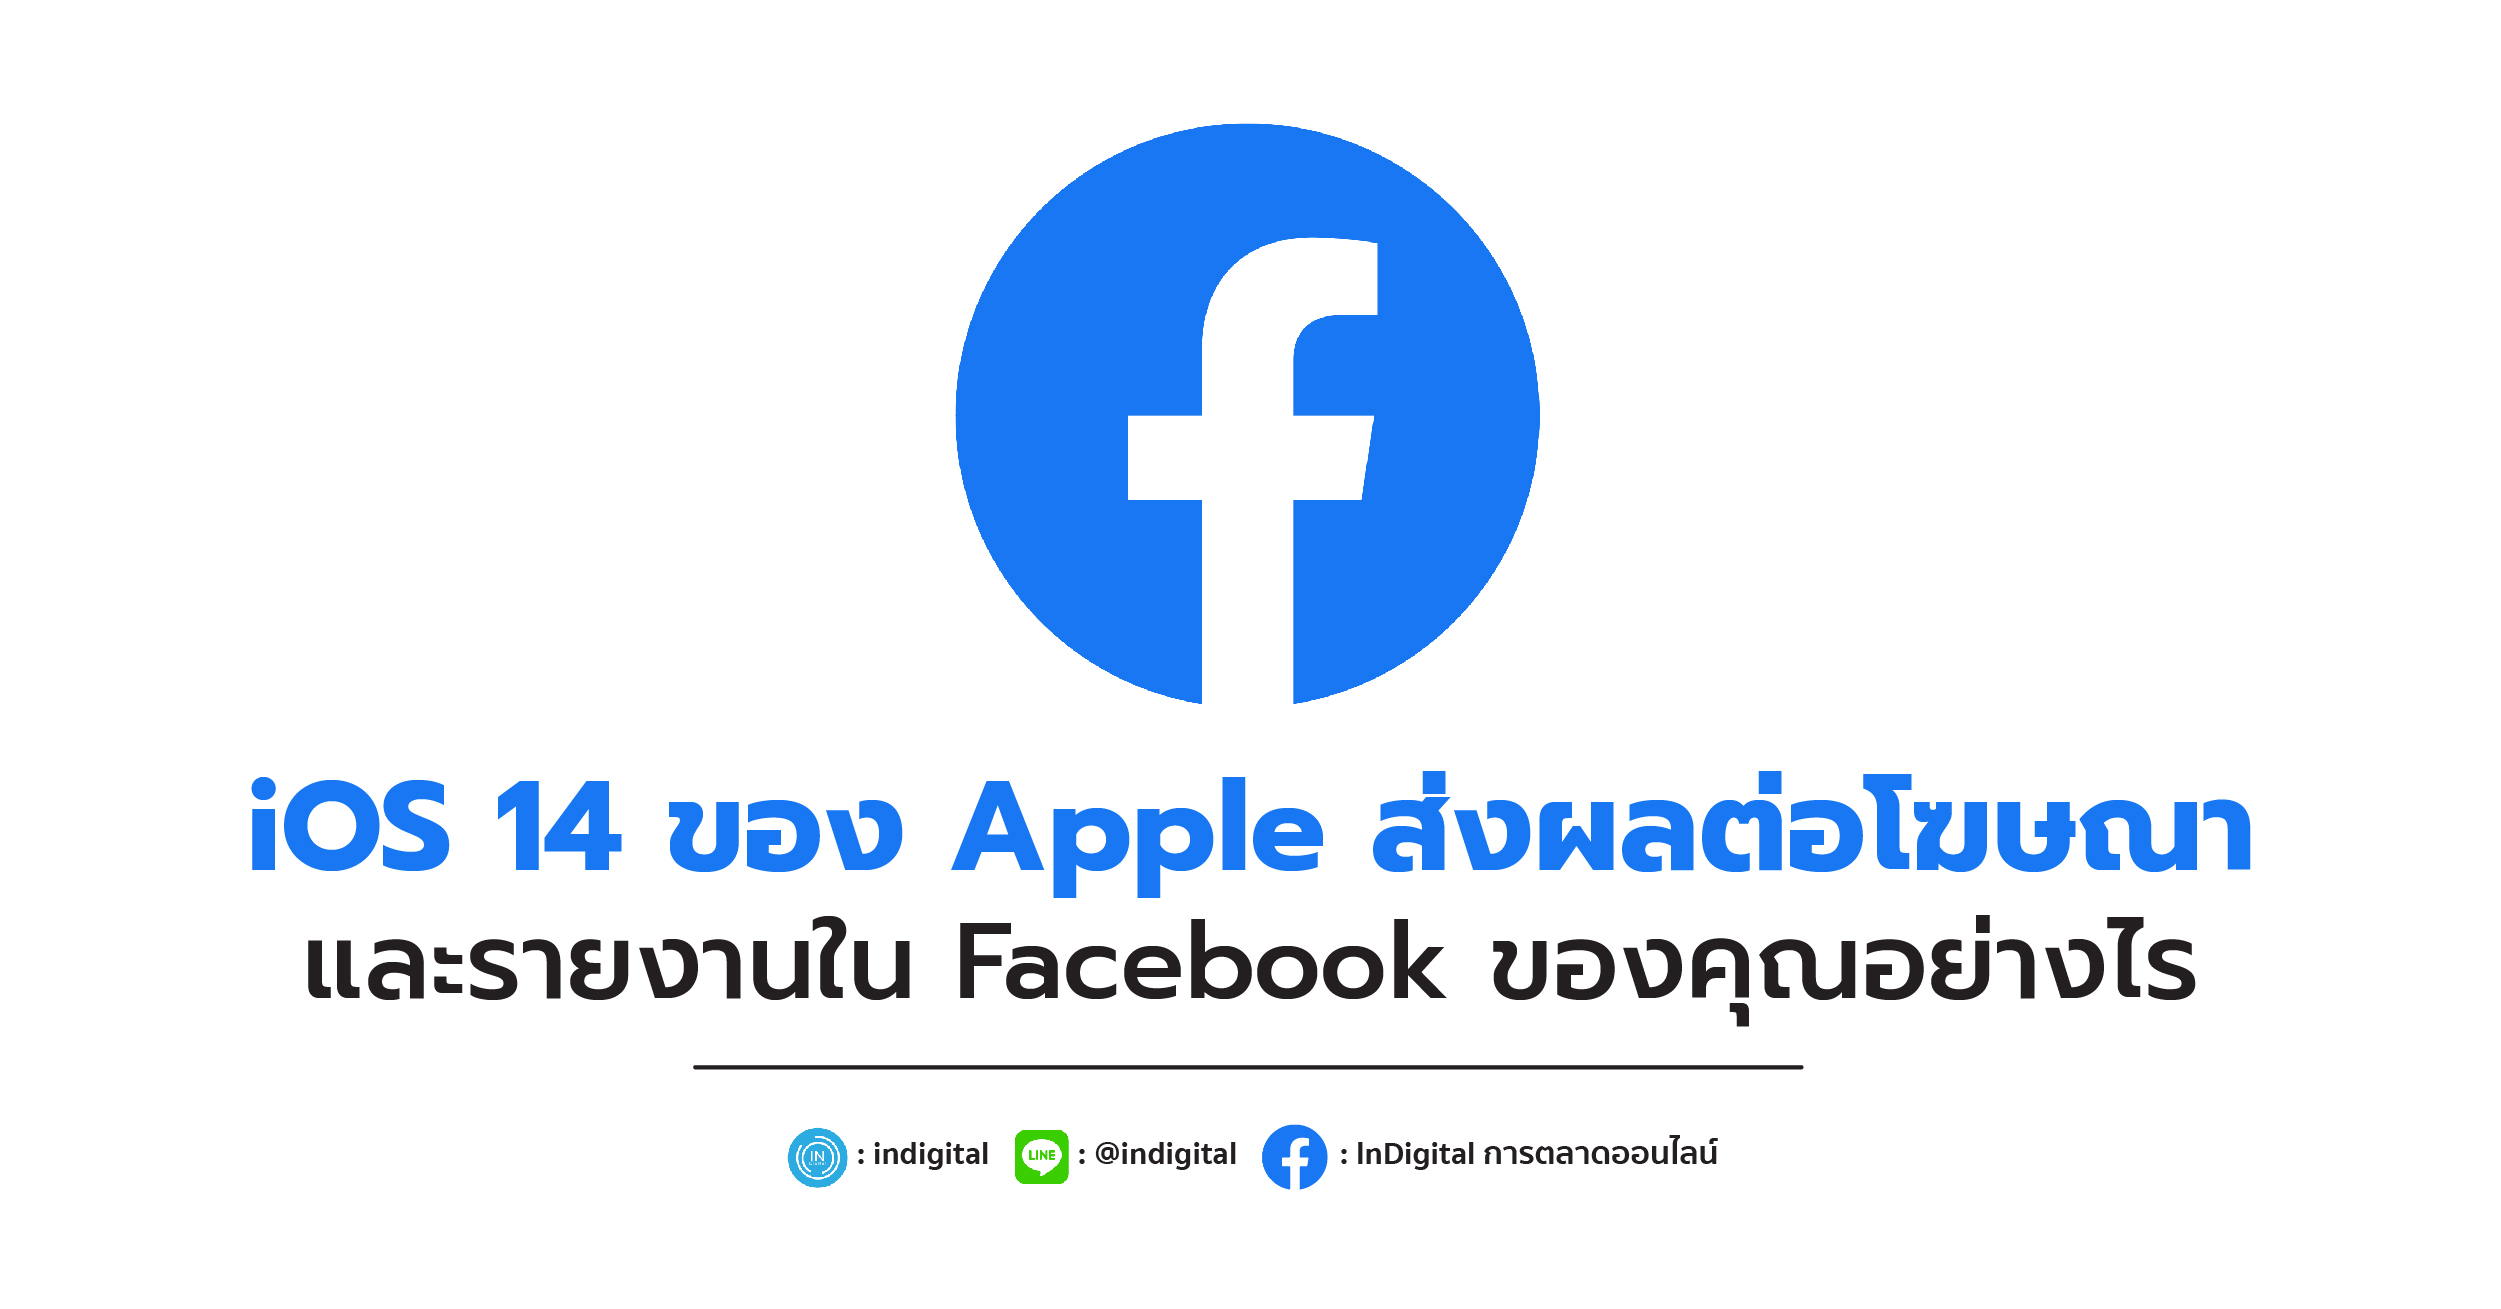 iOS 14 ของ Apple ส่งผลต่อโฆษณาและรายงานใน Facebook ของคุณอย่างไร